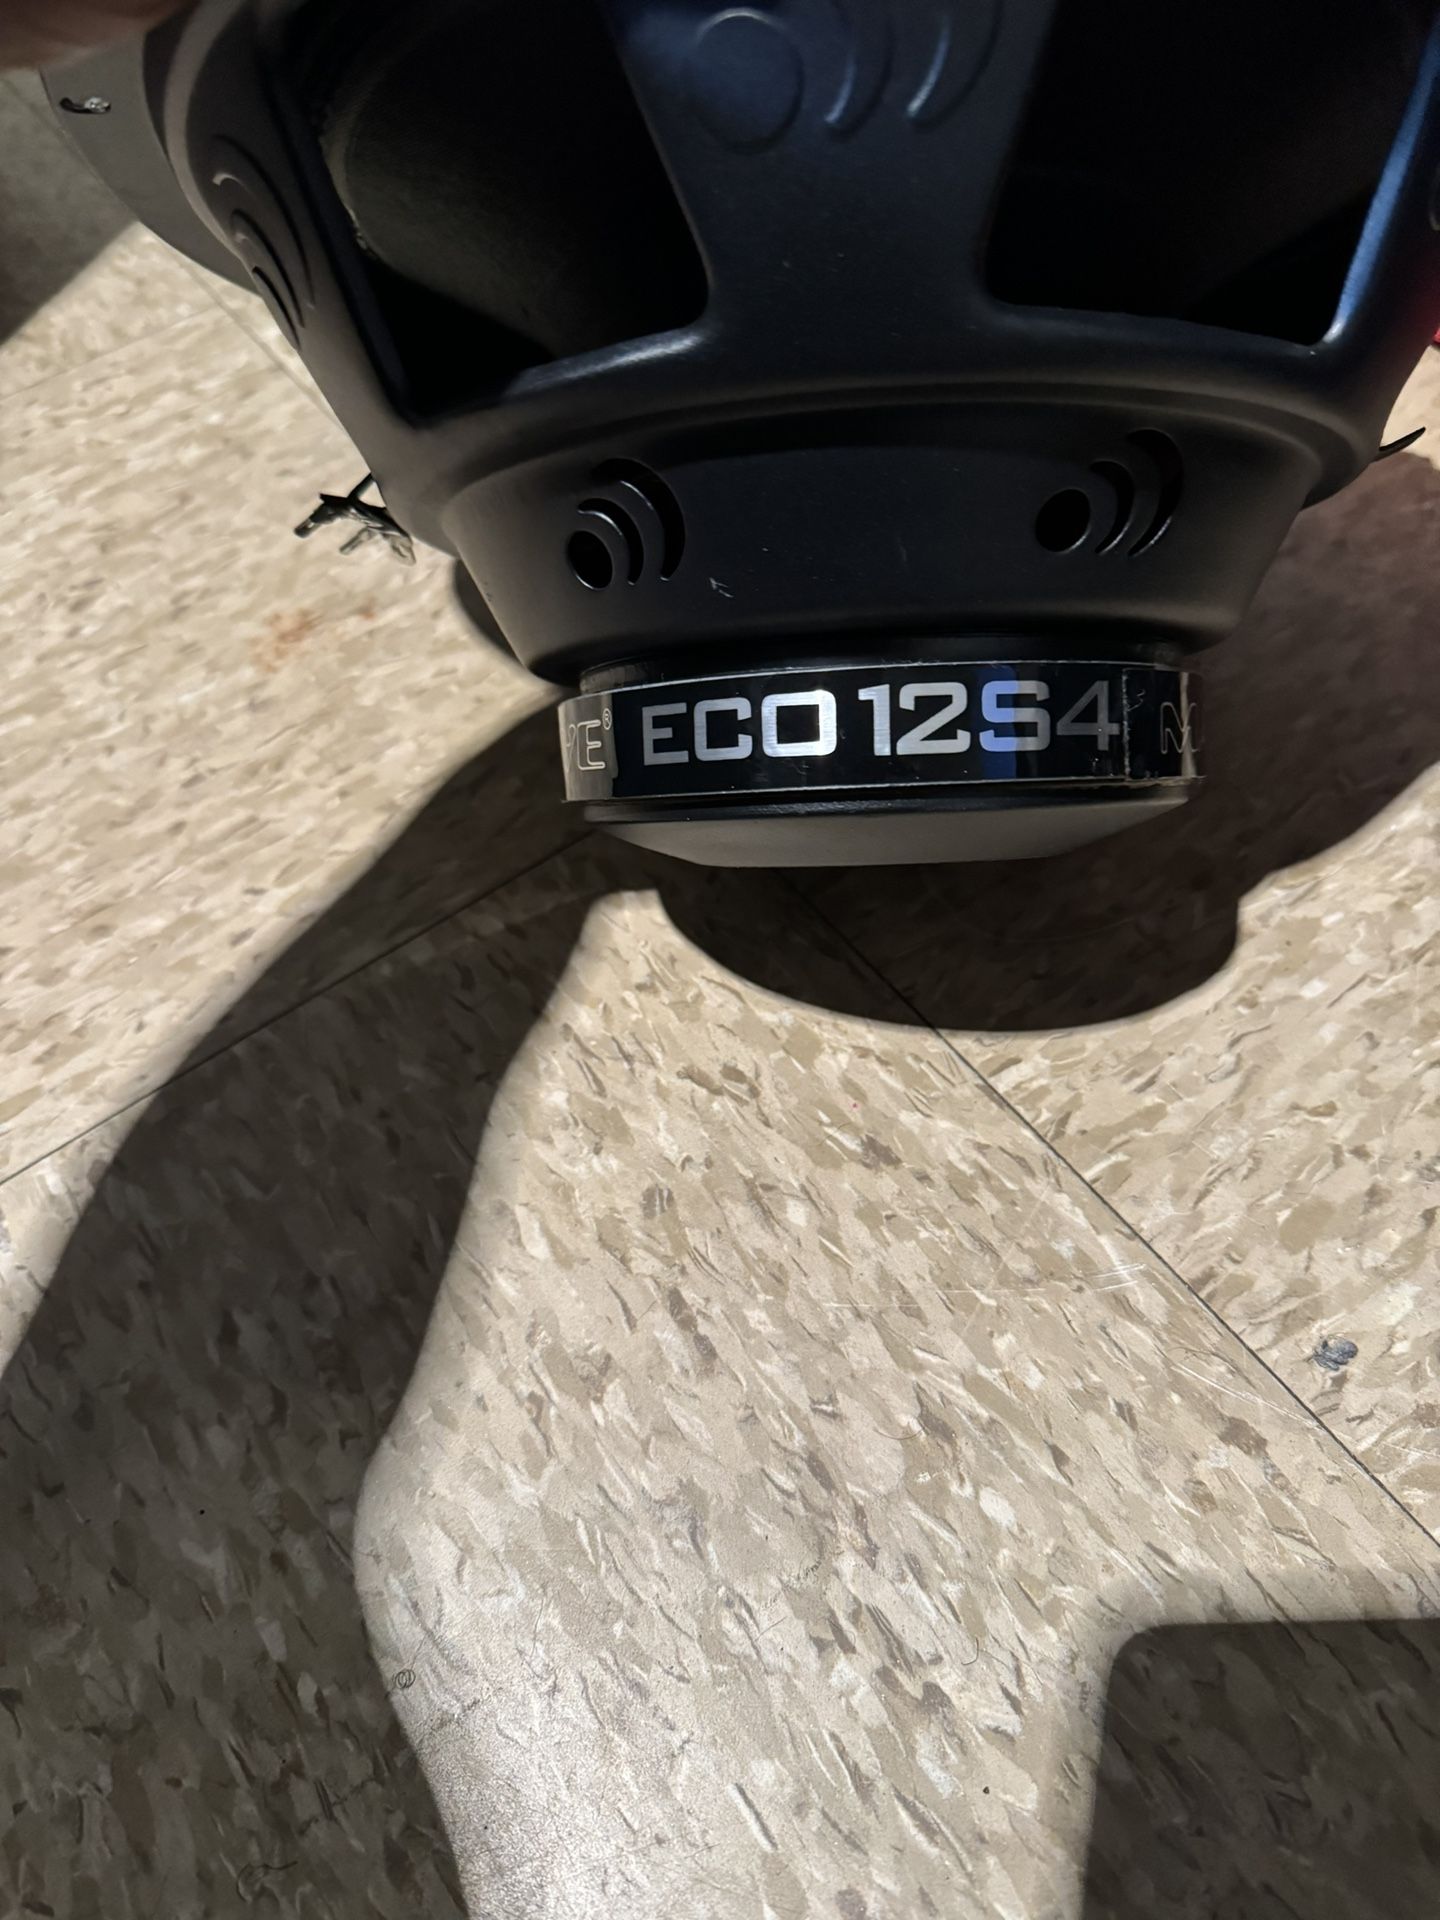 Eco12S4 Speakers 